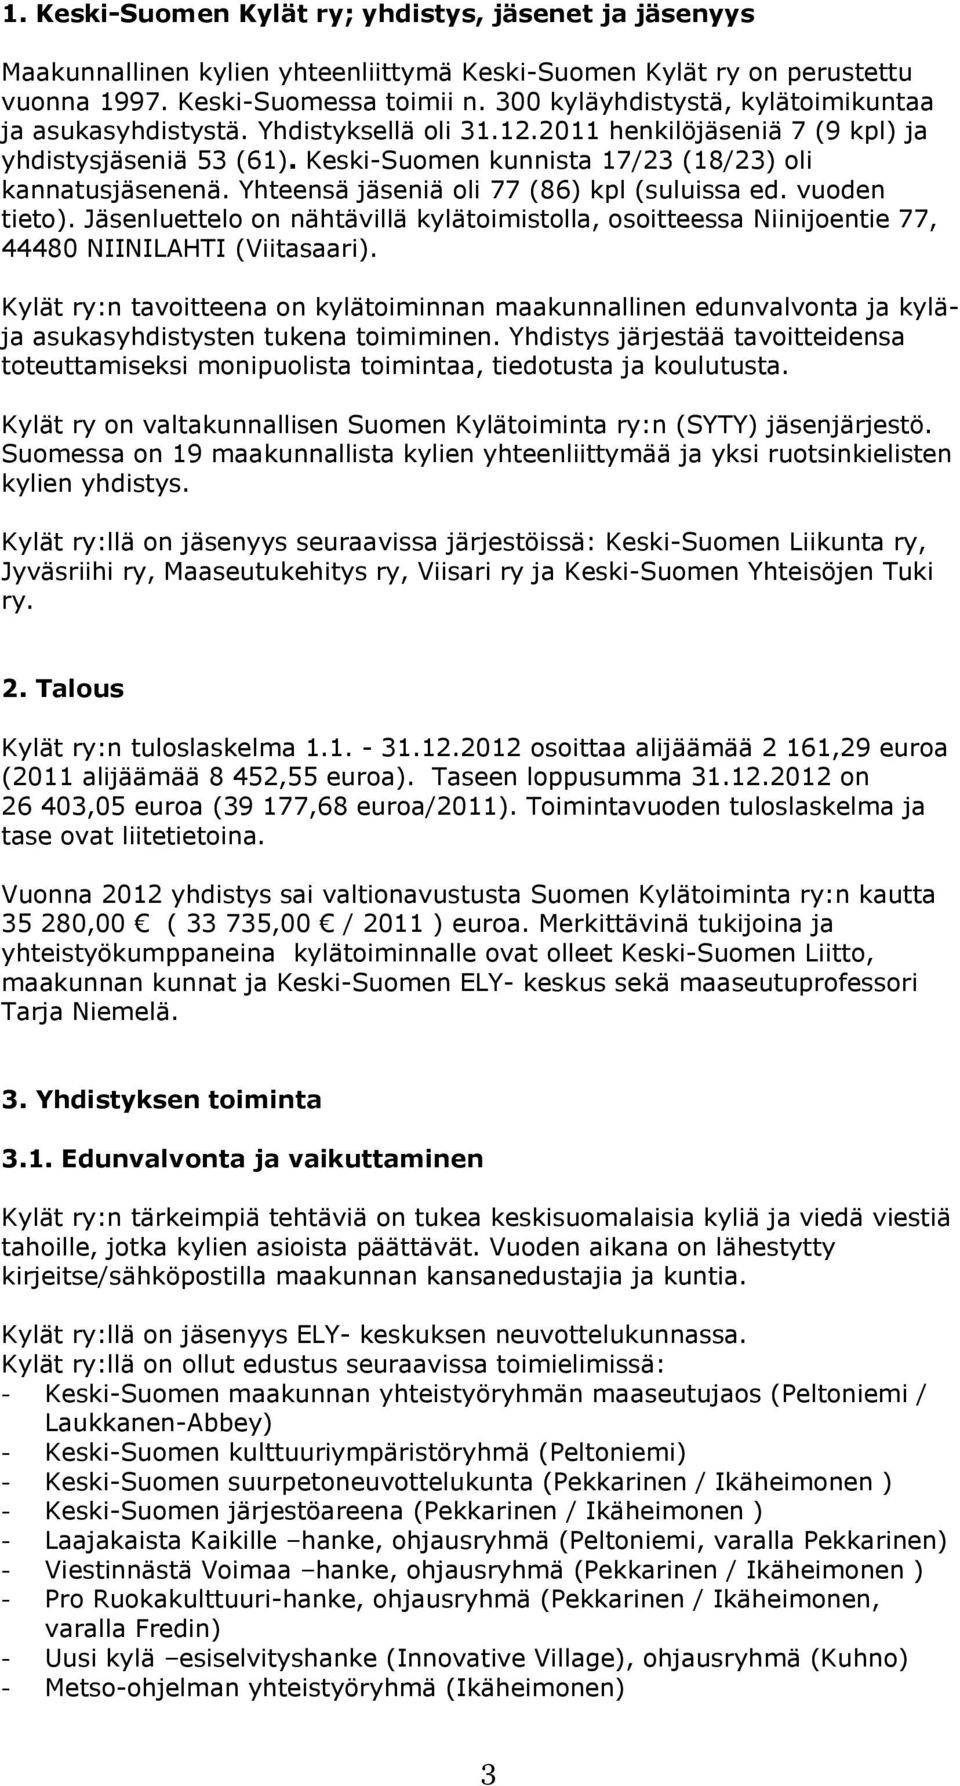 Yhteensä jäseniä oli 77 (86) kpl (suluissa ed. vuoden tieto). Jäsenluettelo on nähtävillä kylätoimistolla, osoitteessa Niinijoentie 77, 44480 NIINILAHTI (Viitasaari).